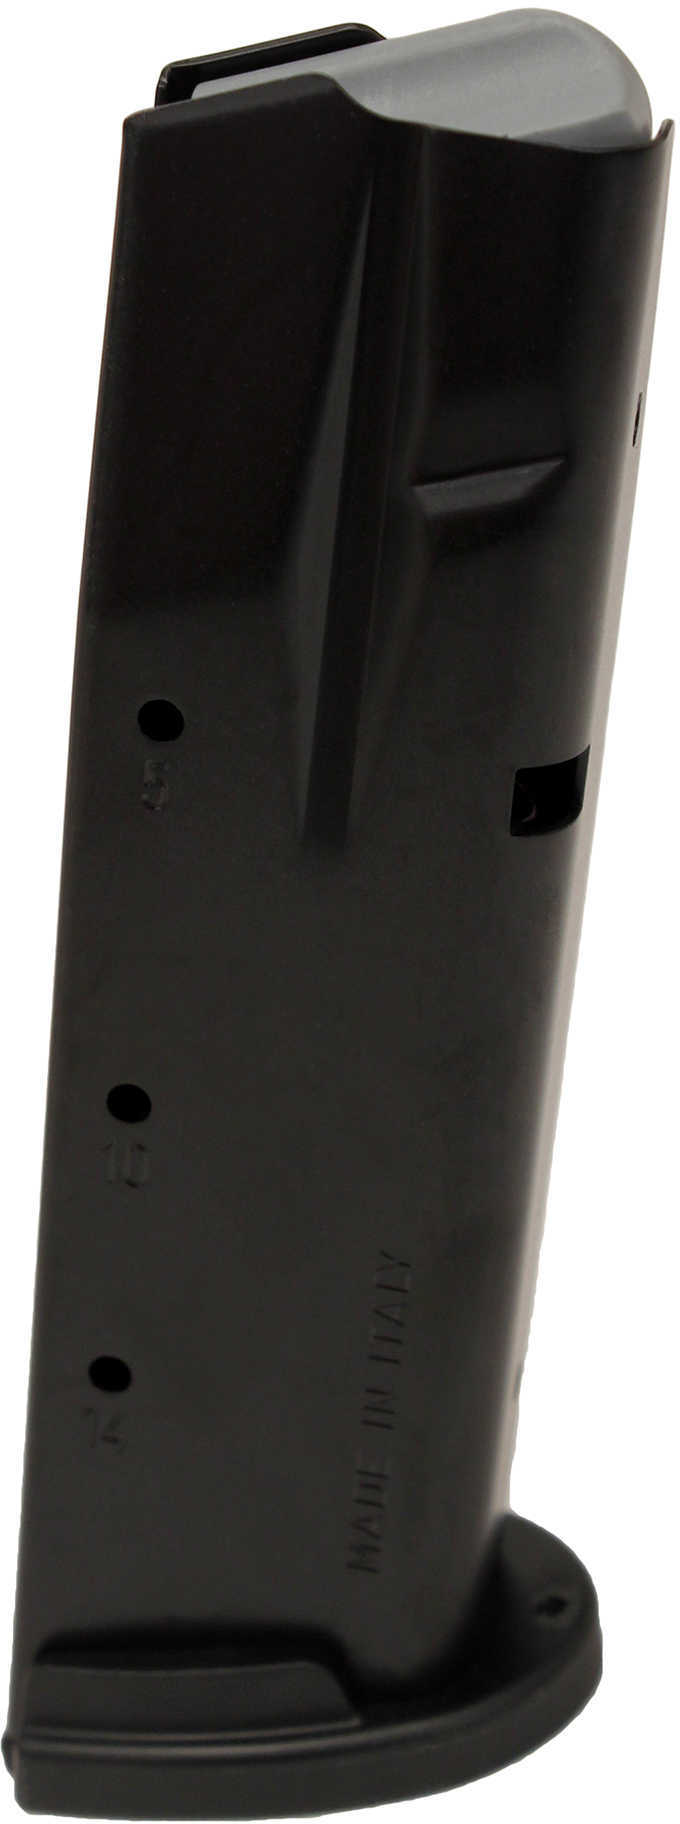 Sig Sauer Handgun Magazine For P250/P320 Full Size .40 S&W/.357 Sig 10rds Black